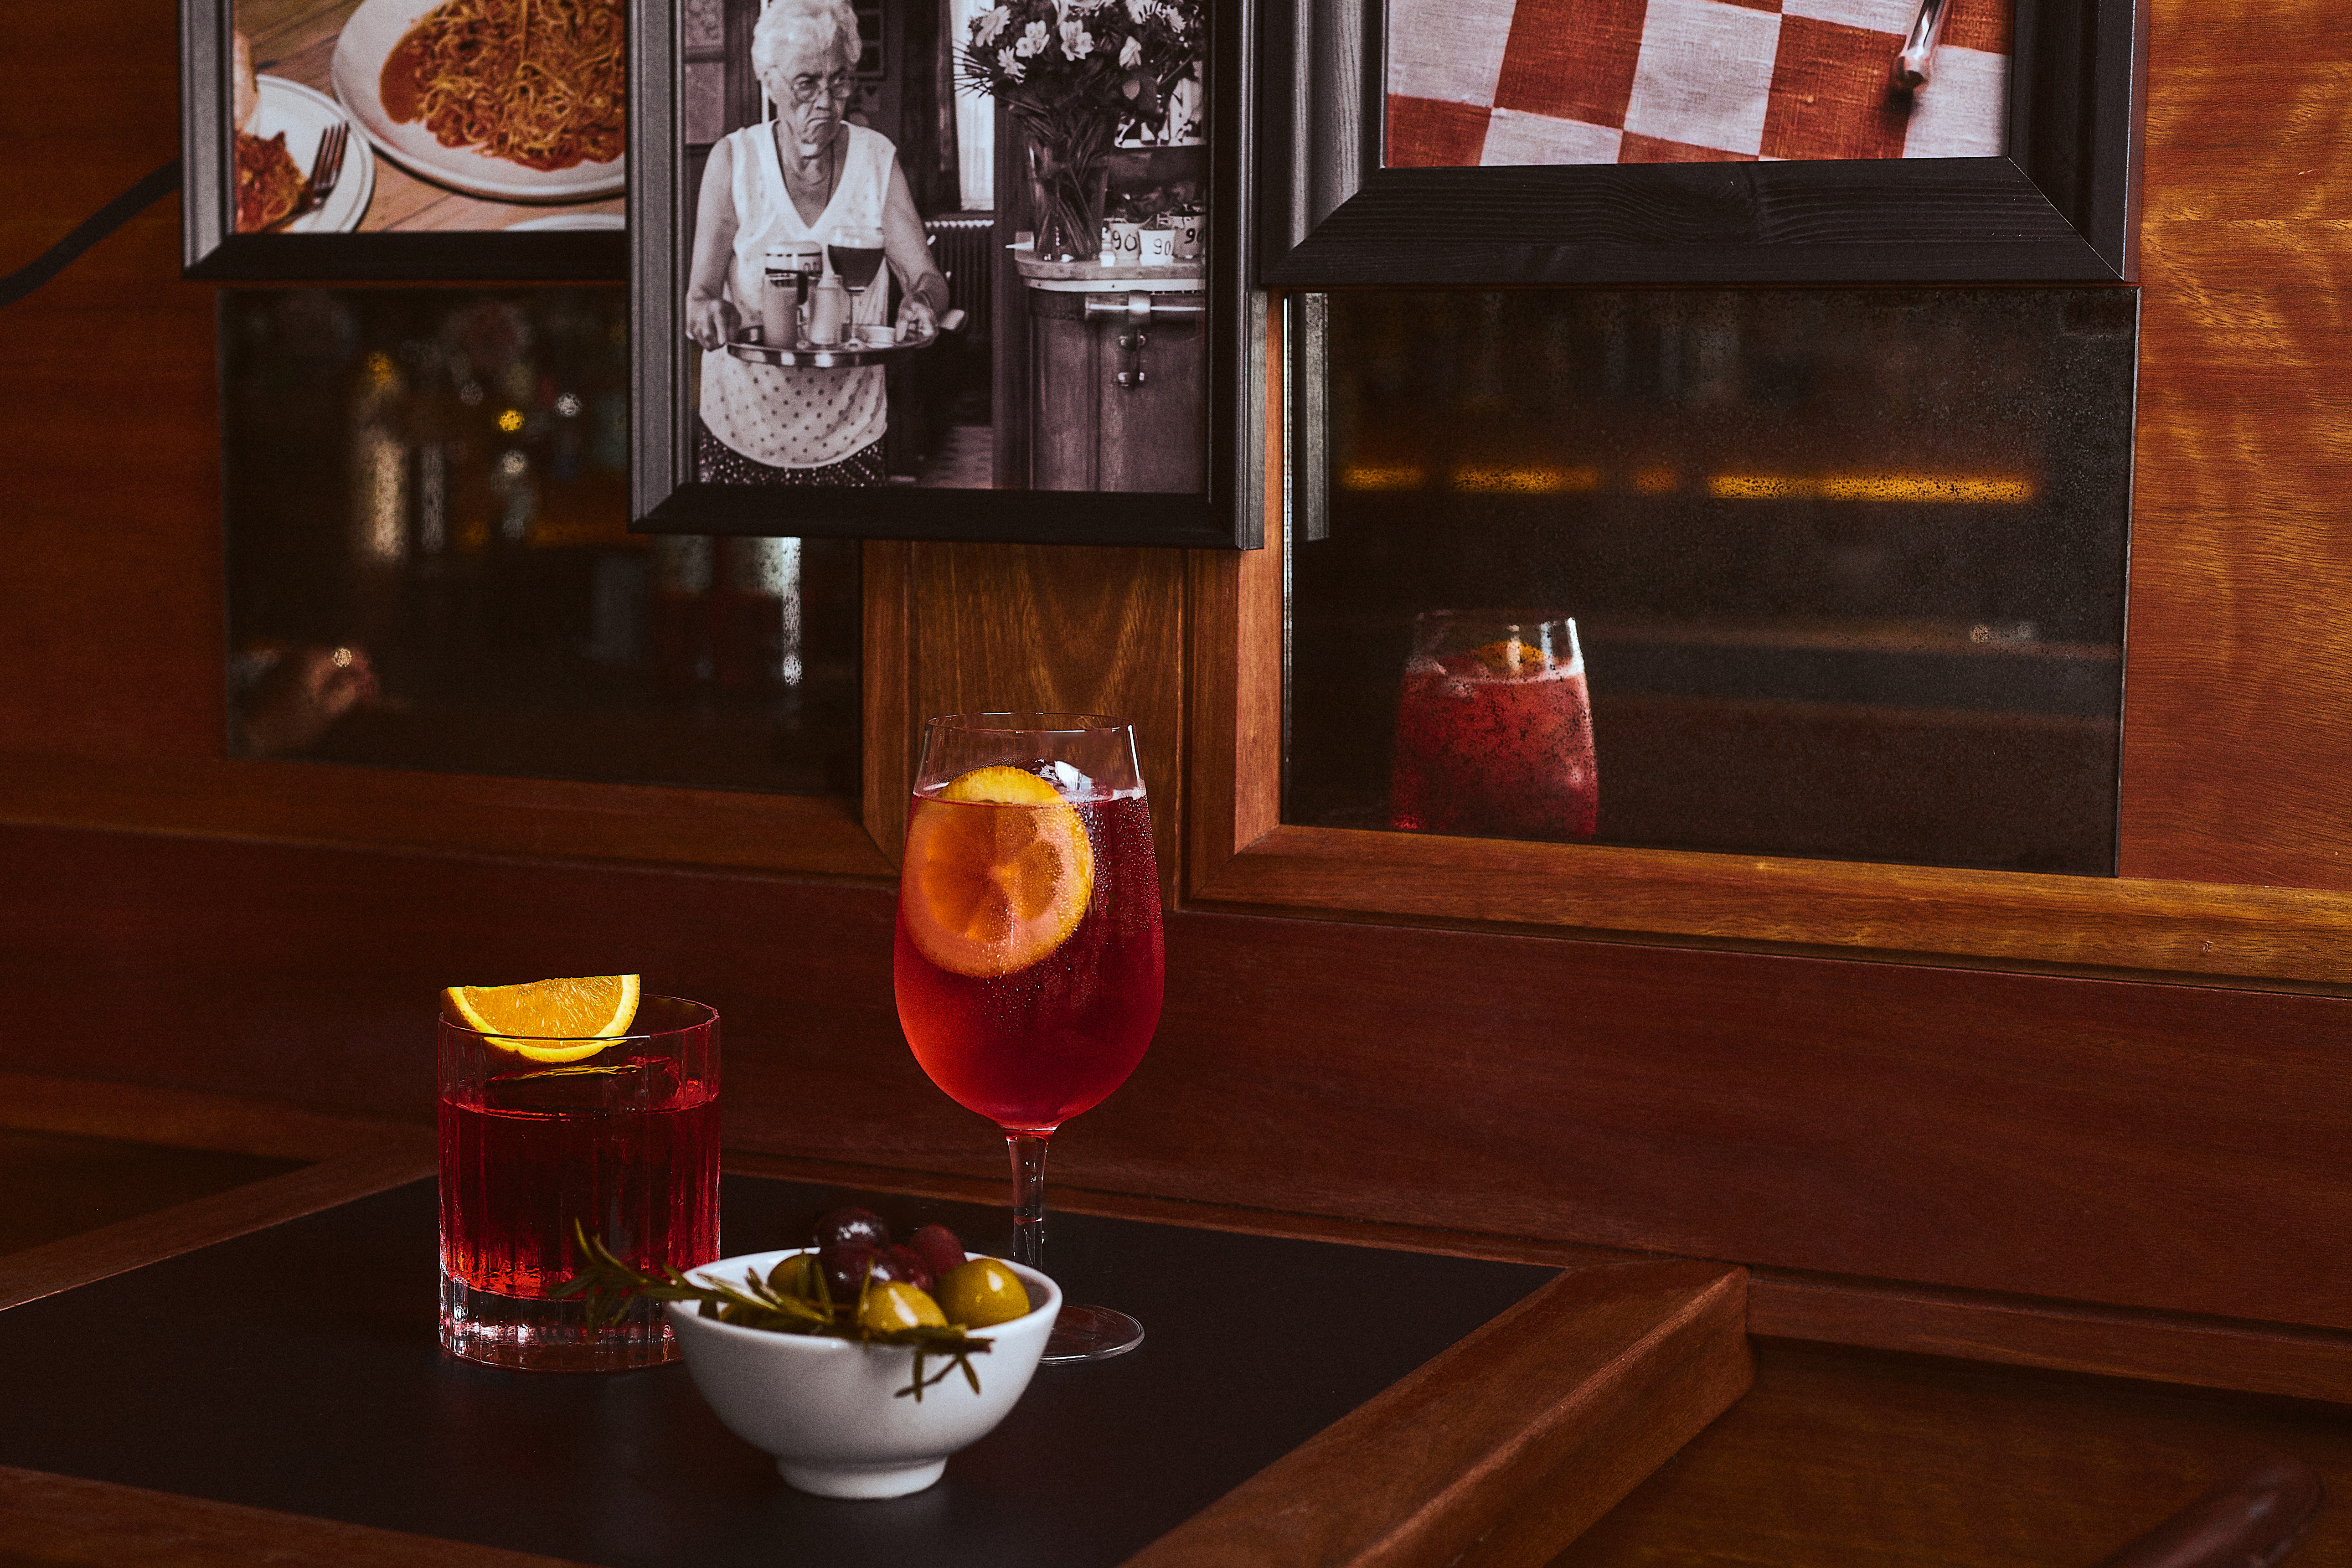 Solotel launches Roman bar Rina’s at Sydney’s Paddo Inn – hospitality